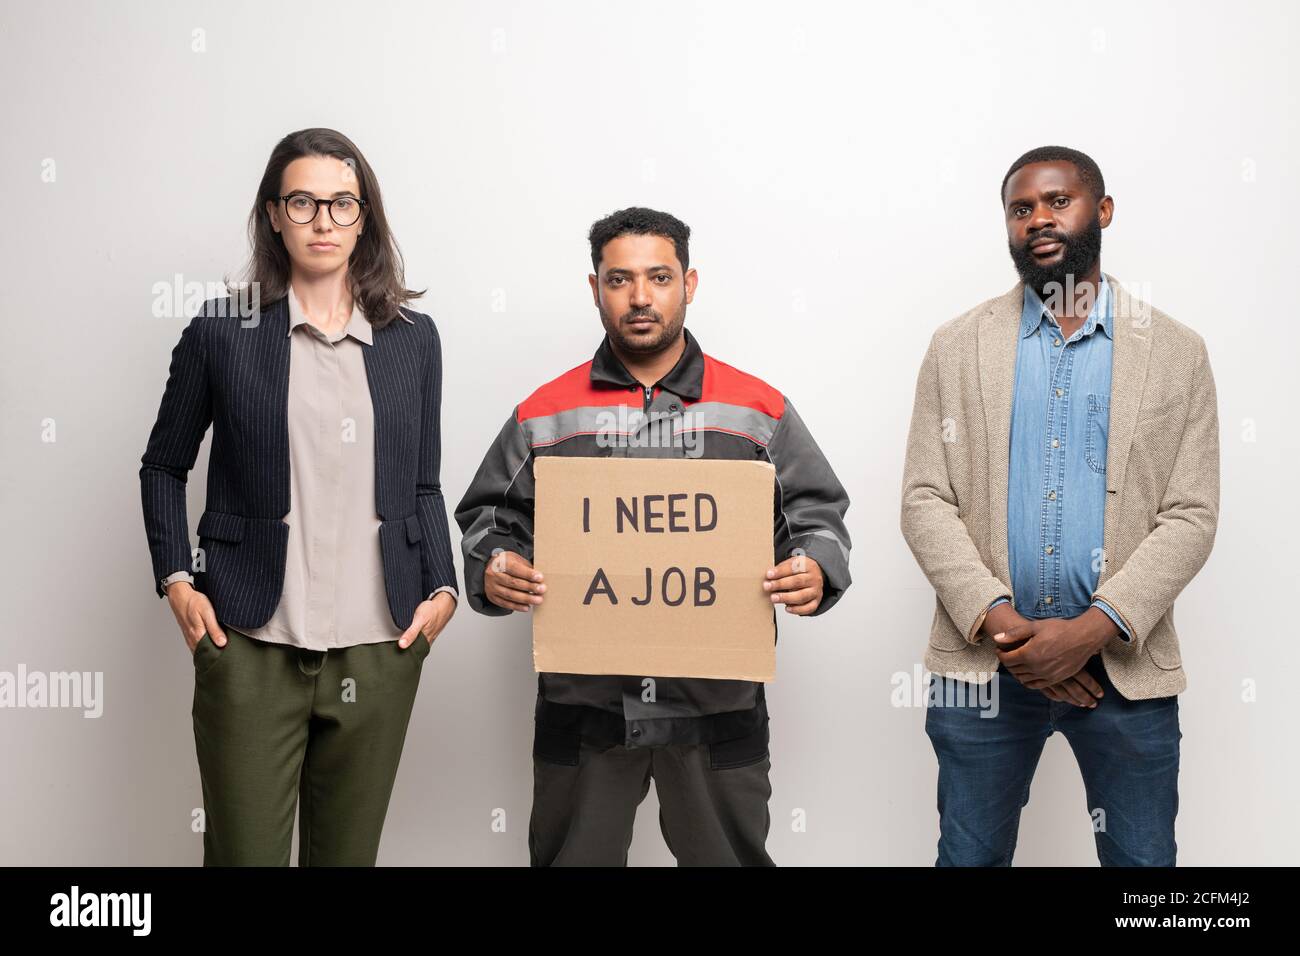 Les jeunes gens contemporains, interculturels et sans emploi, debout devant la caméra Banque D'Images